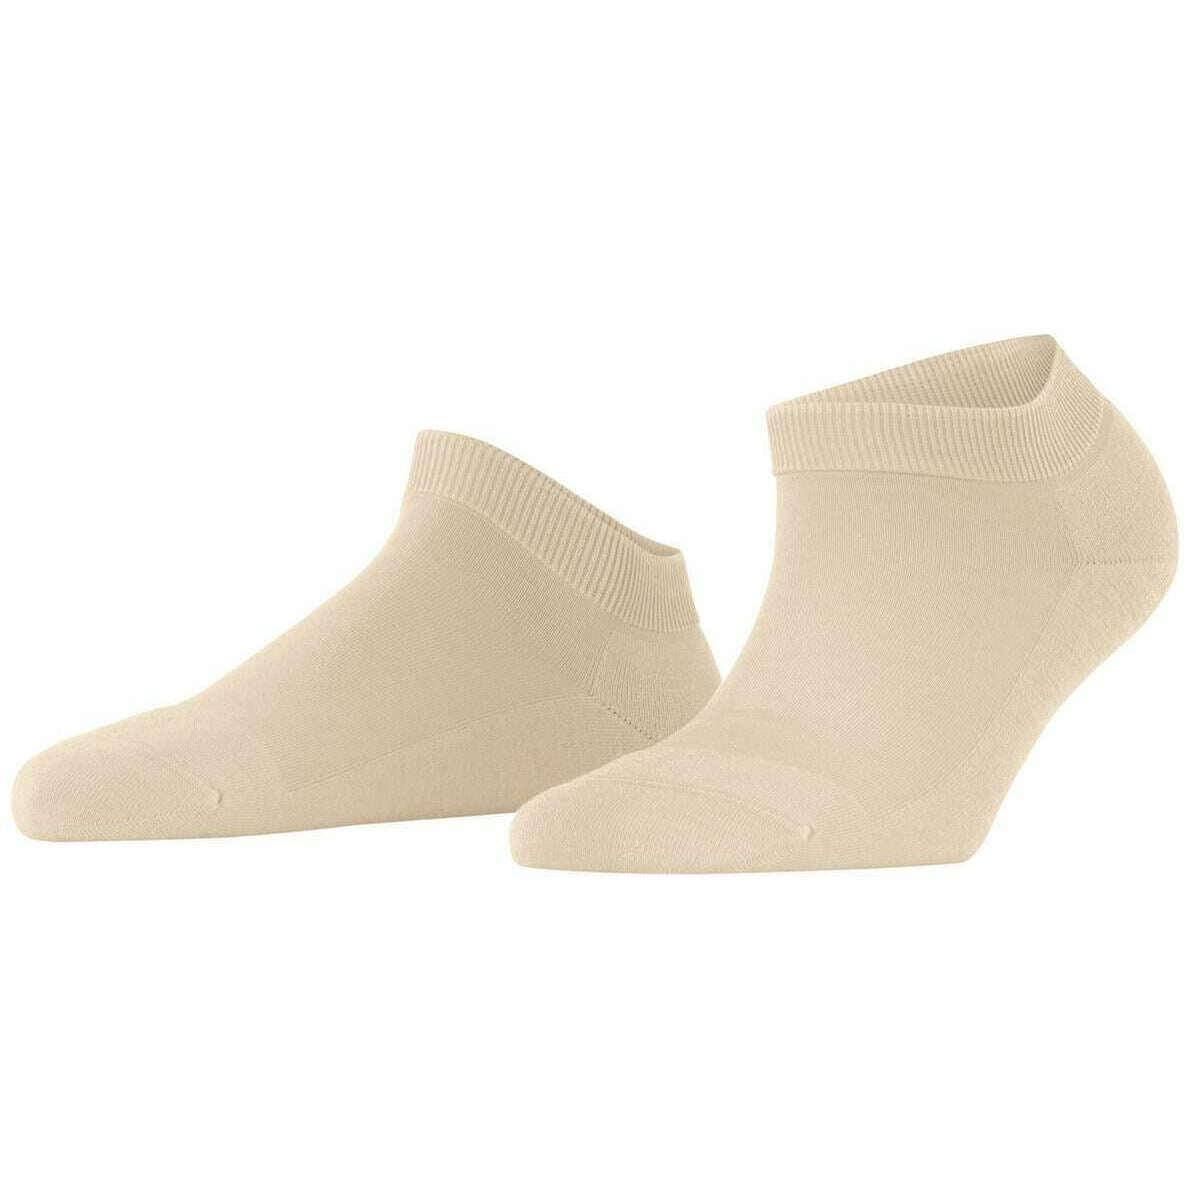 Falke Climawool Sneaker Socks - Cream Beige